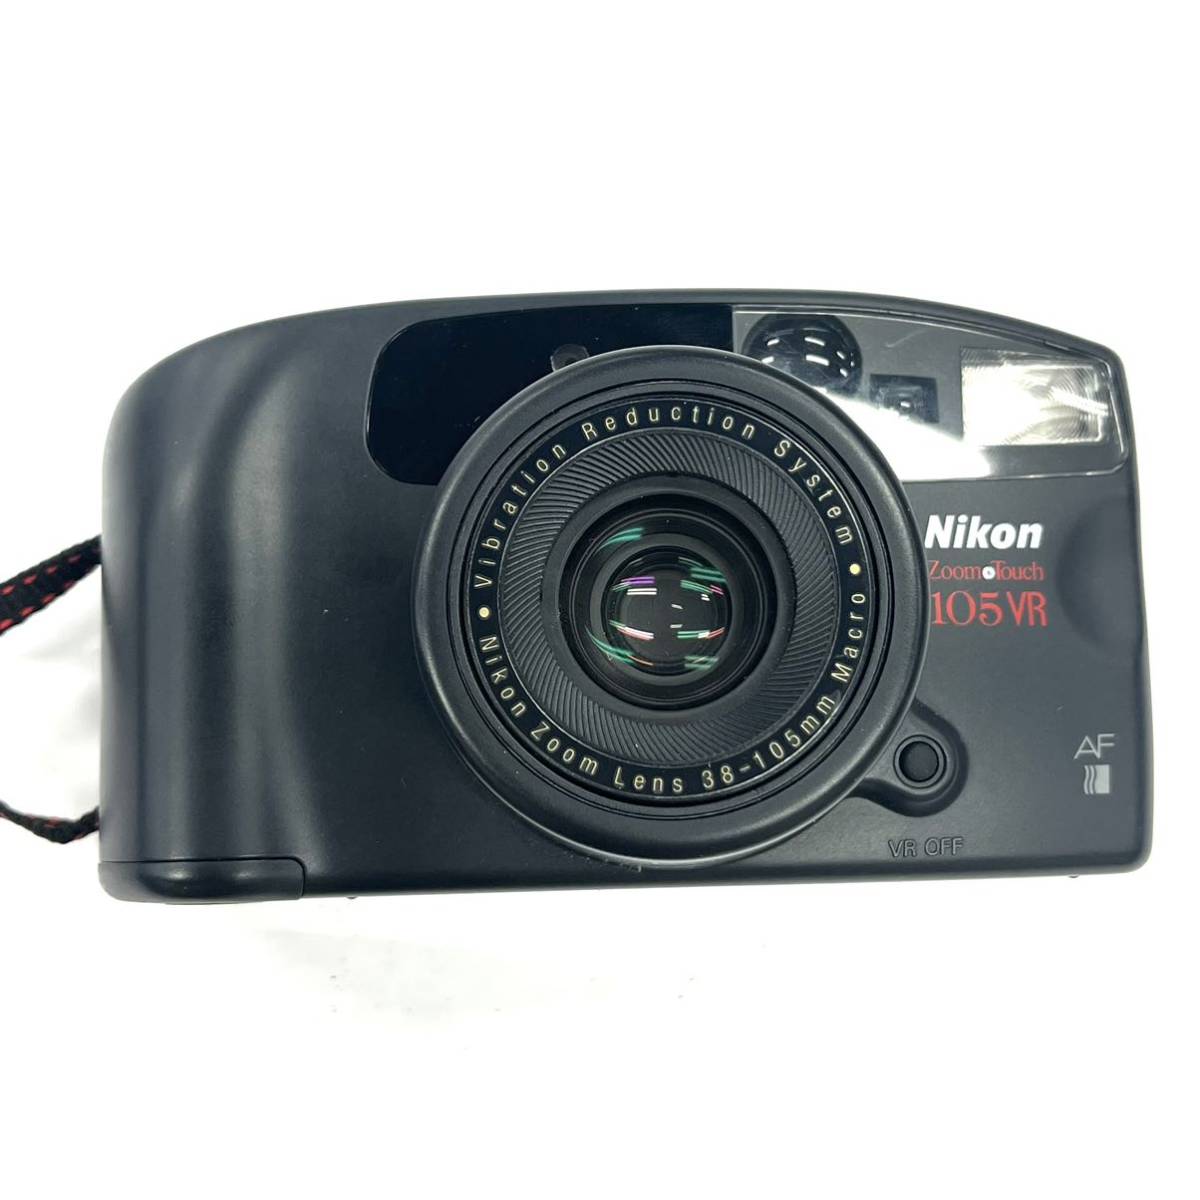 N163 フィルムカメラ 三脚 まとめ Nikon ニコン Zoom Touch 105VR yasica ヤシカ ジャンク品 中古 訳あり_画像9